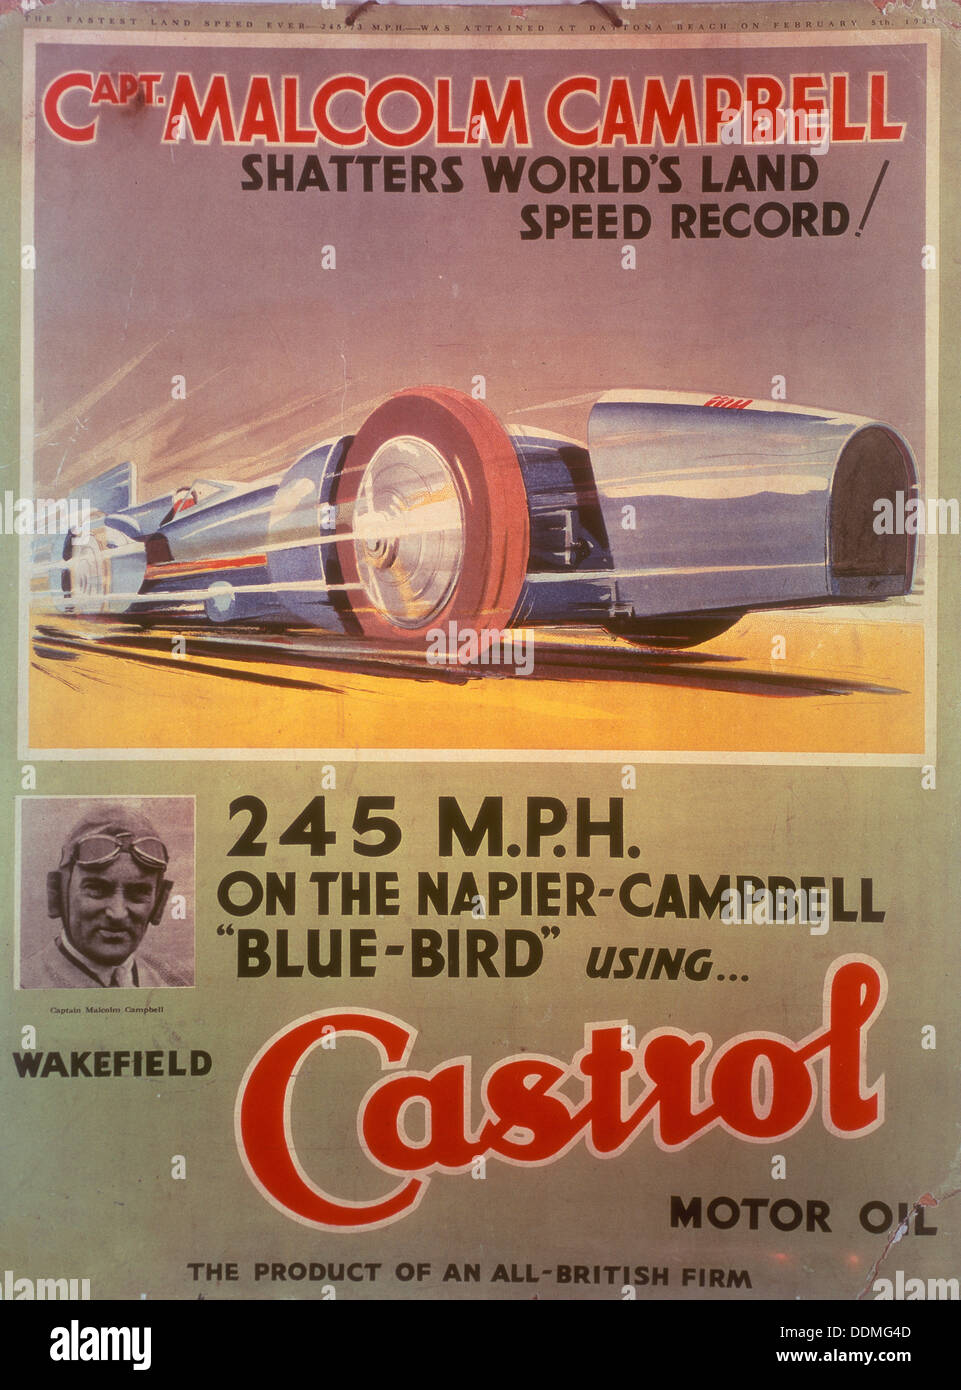 Affiche publicitaire de l'huile Castrol, avec Bluebird et Malcolm Campbell, au début des années 1930. Artiste : Inconnu Banque D'Images